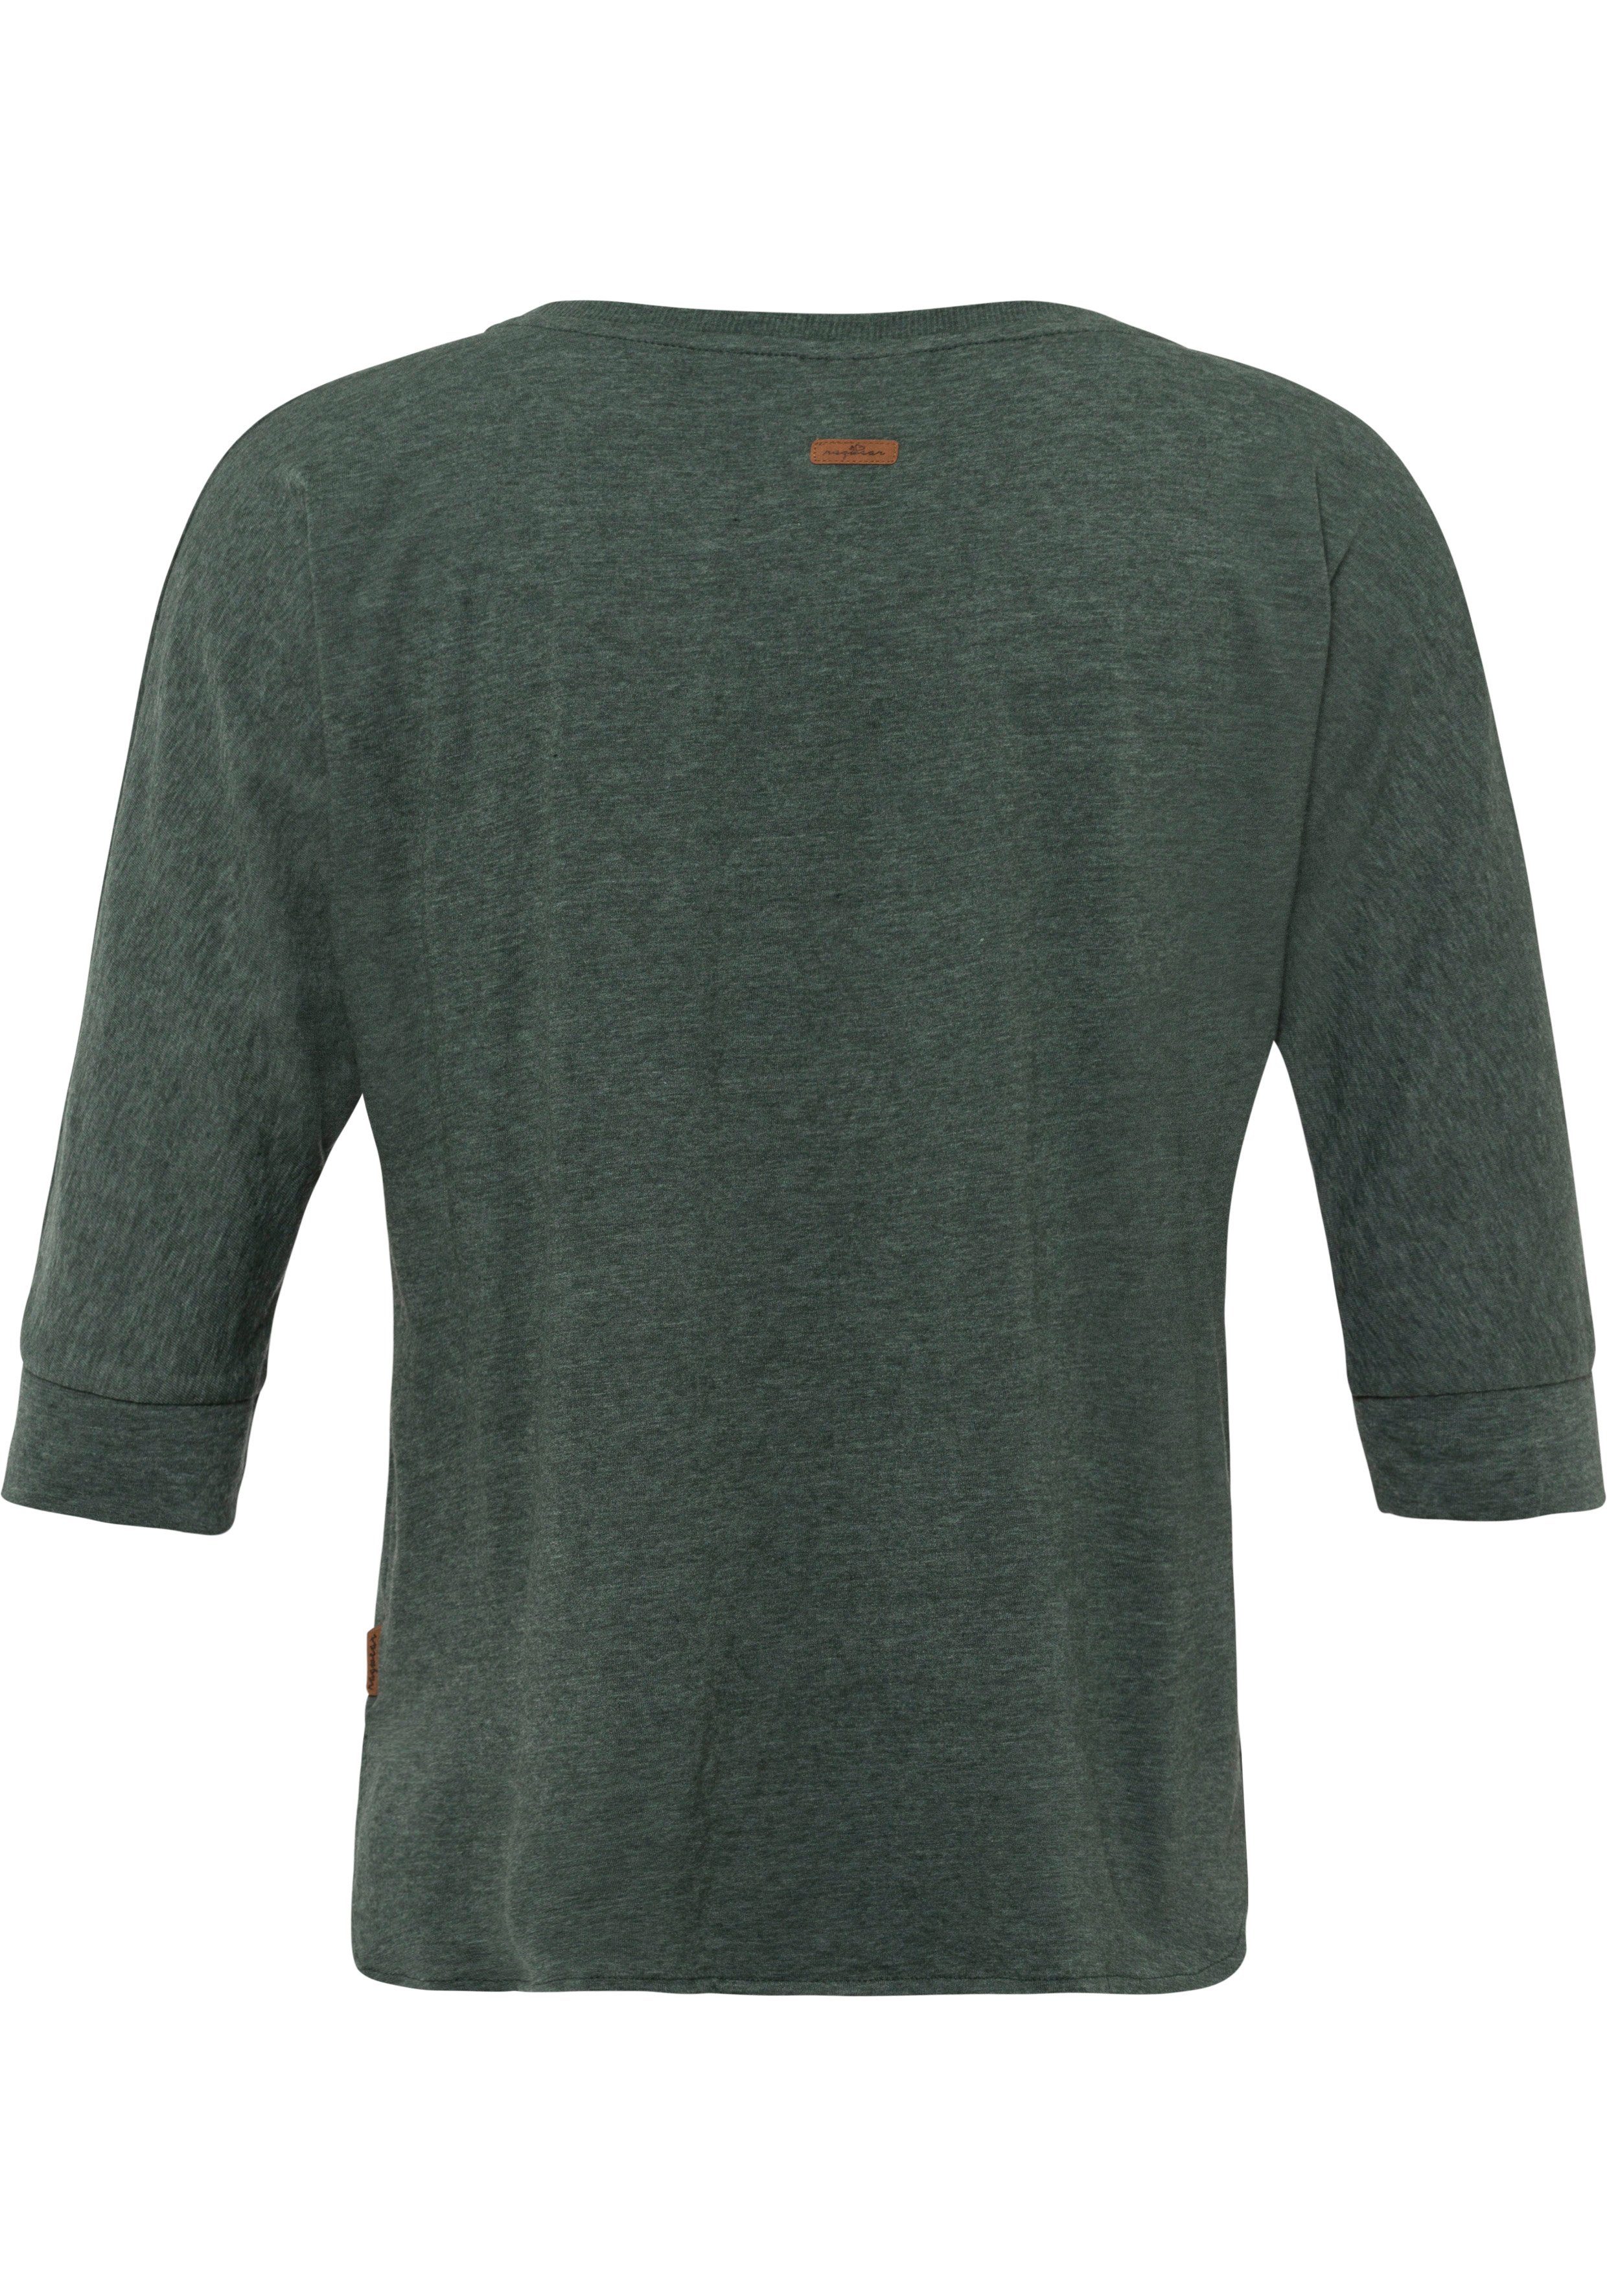 mit in im green T-Shirt Herz-Design Holzoptik natürlicher Ragwear SHIMONA Zierknopfbesatz dark